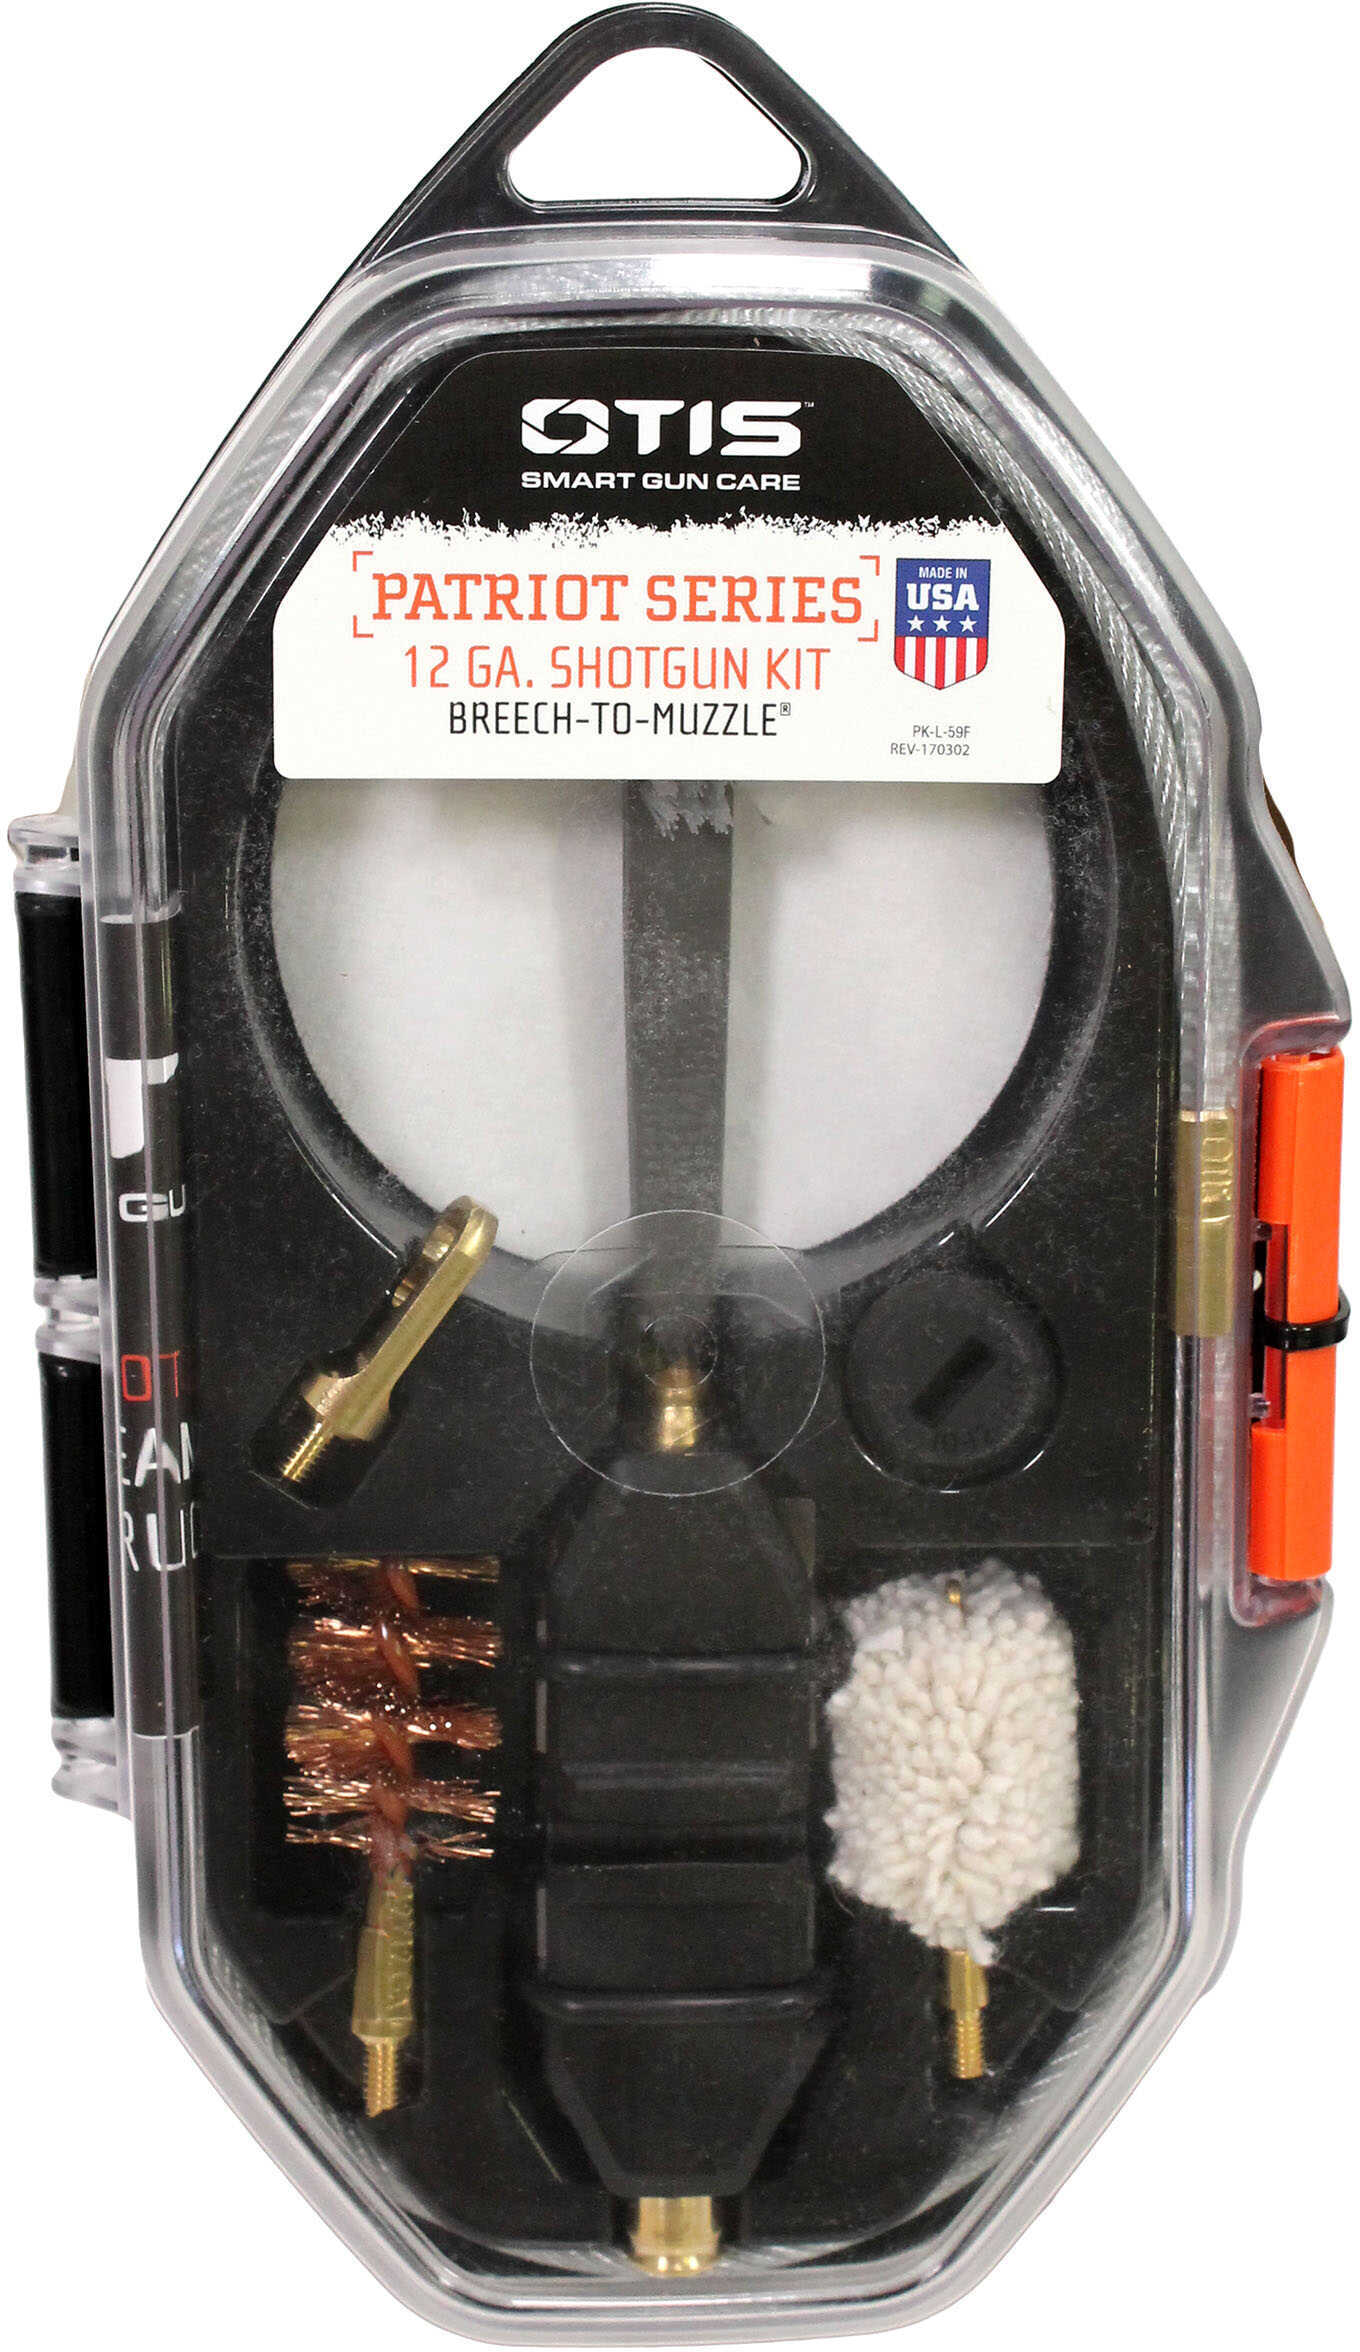 12Ga Patriot Series Shotgun Kit